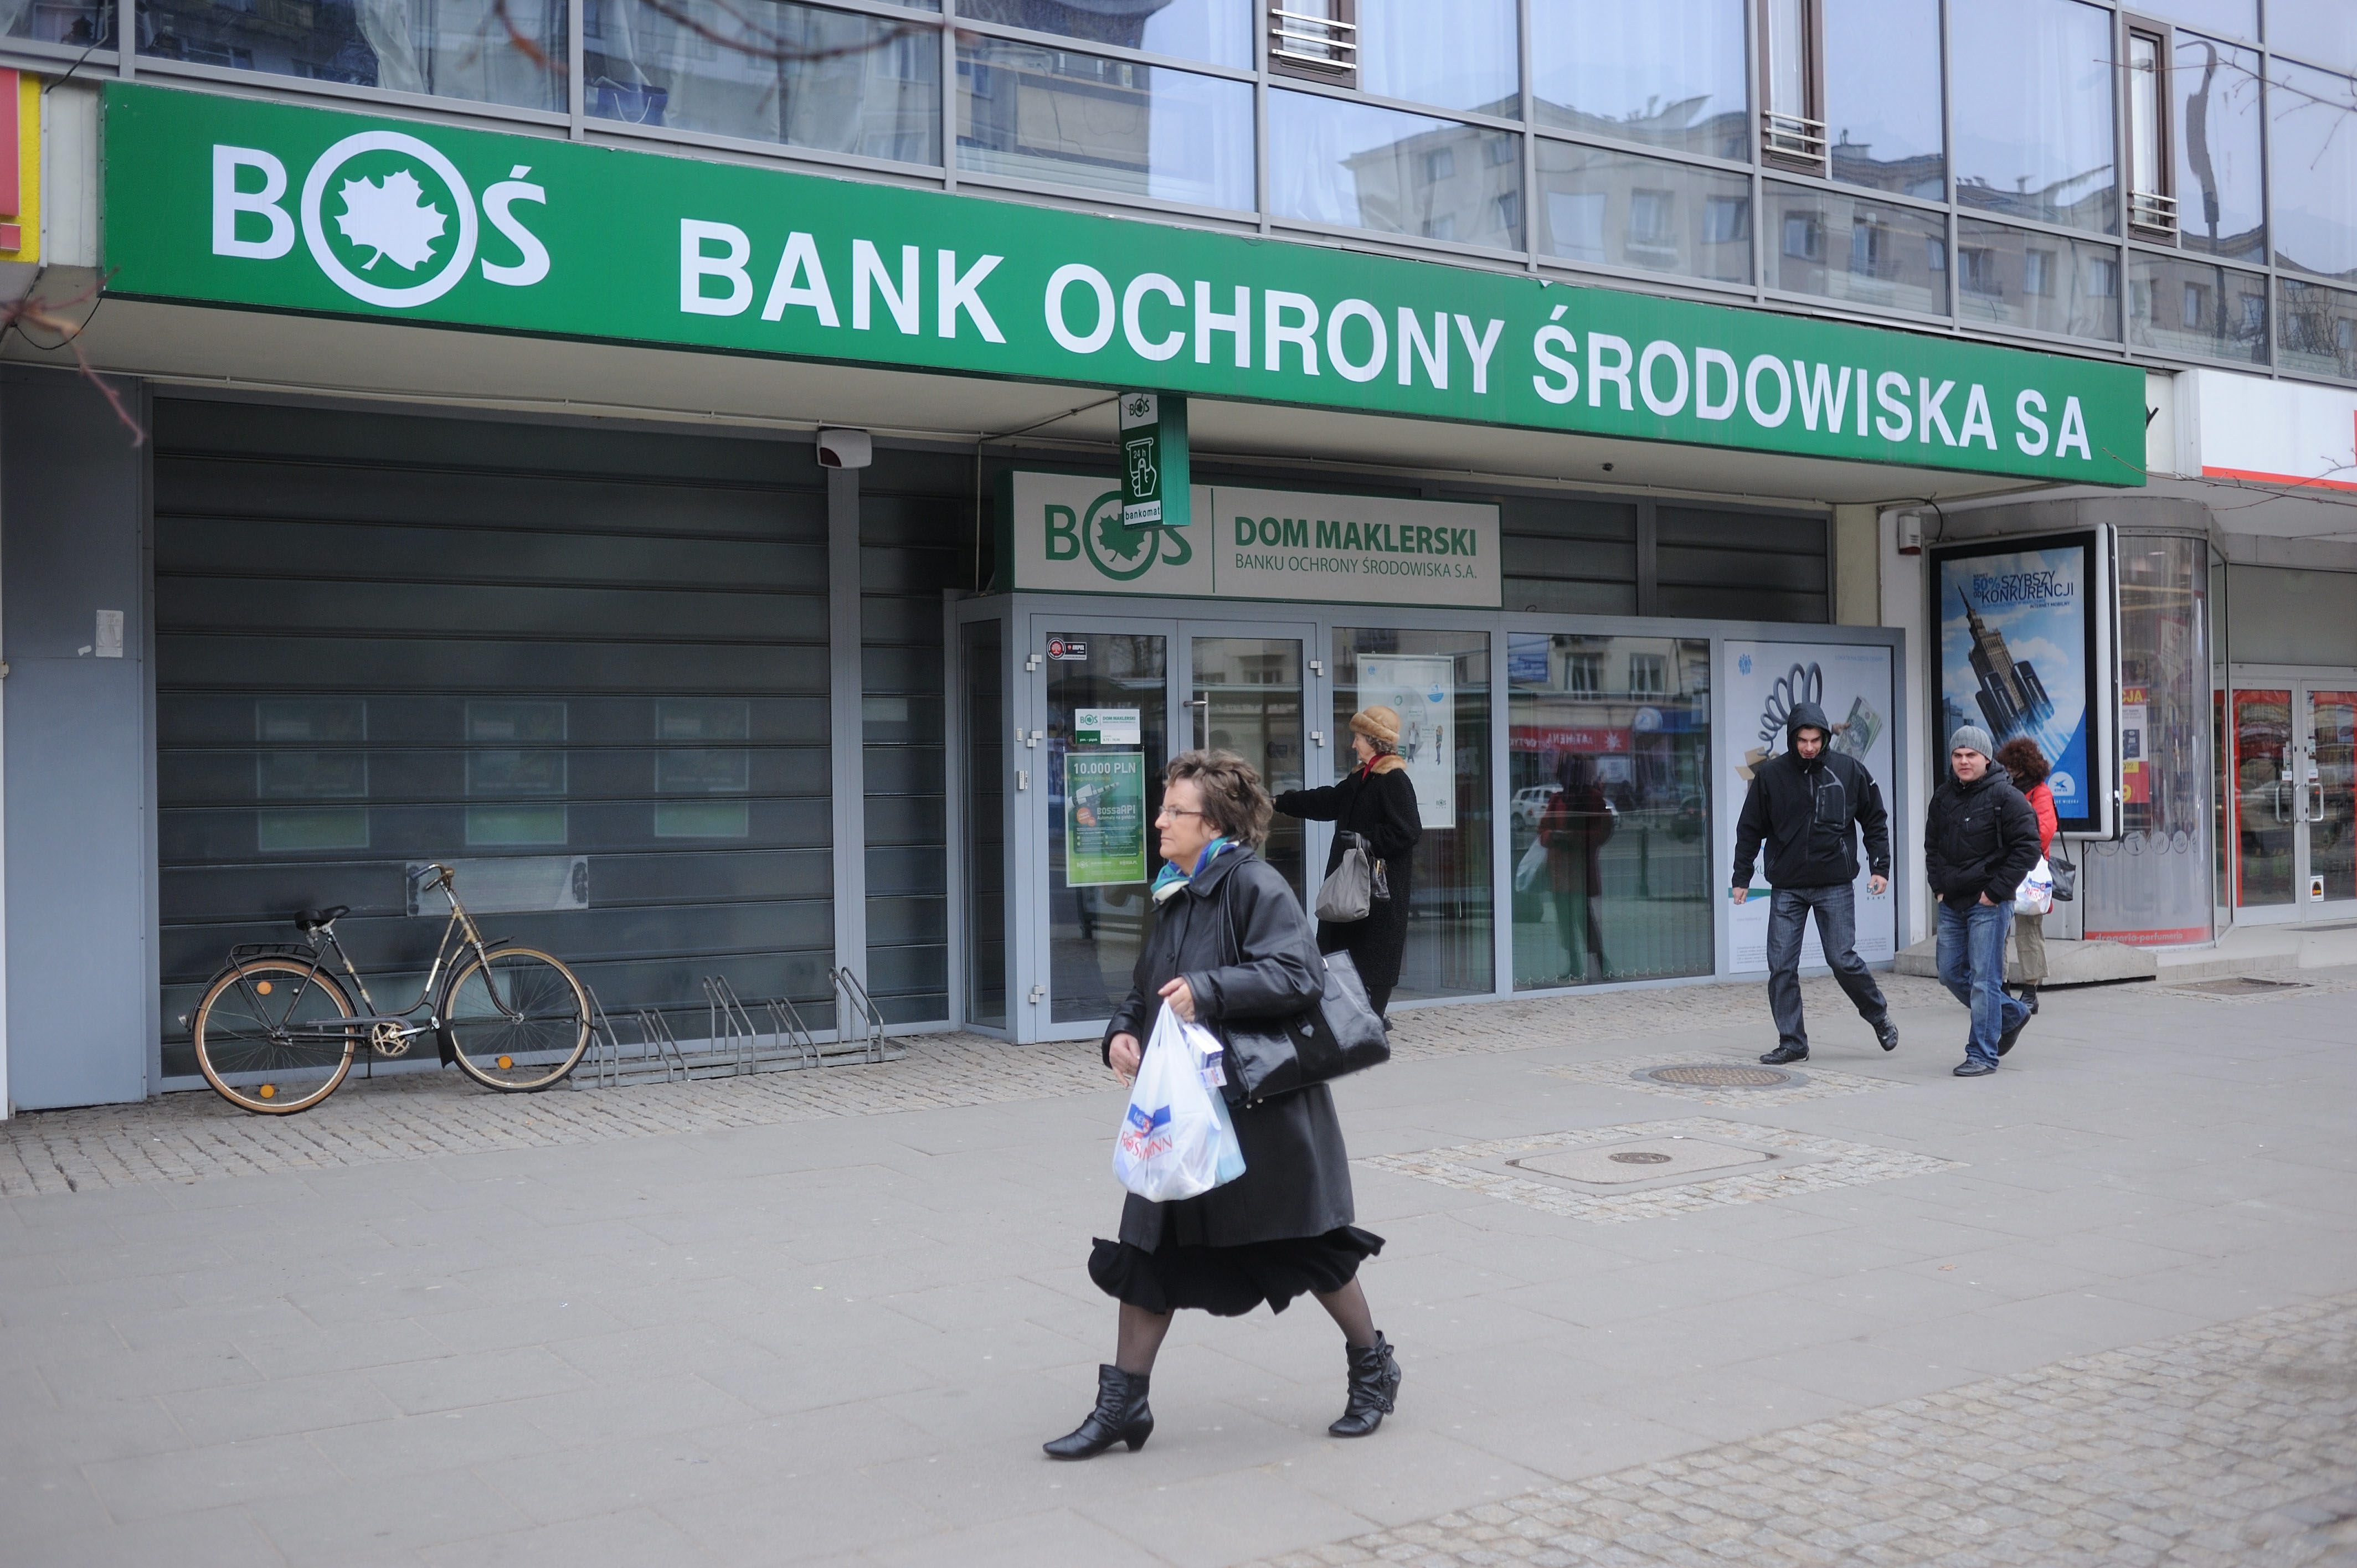 BOŚ Bank zostanie podzielony? - Biznes - Forbes.pl